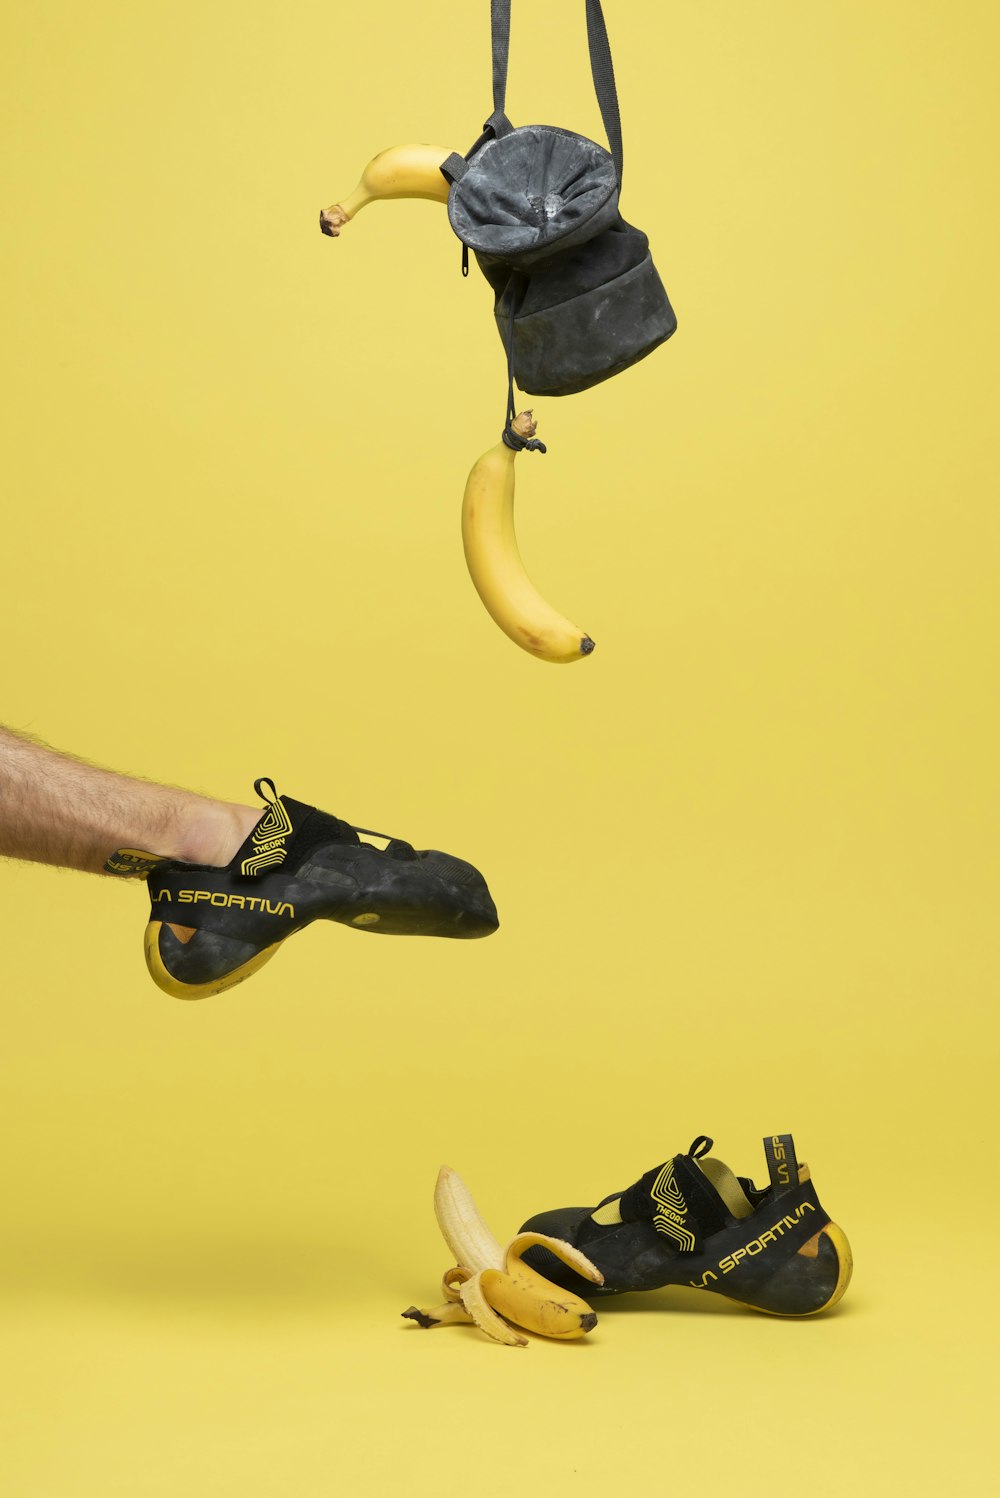 une banane suspendue à une ficelle à côté d’une paire de chaussures